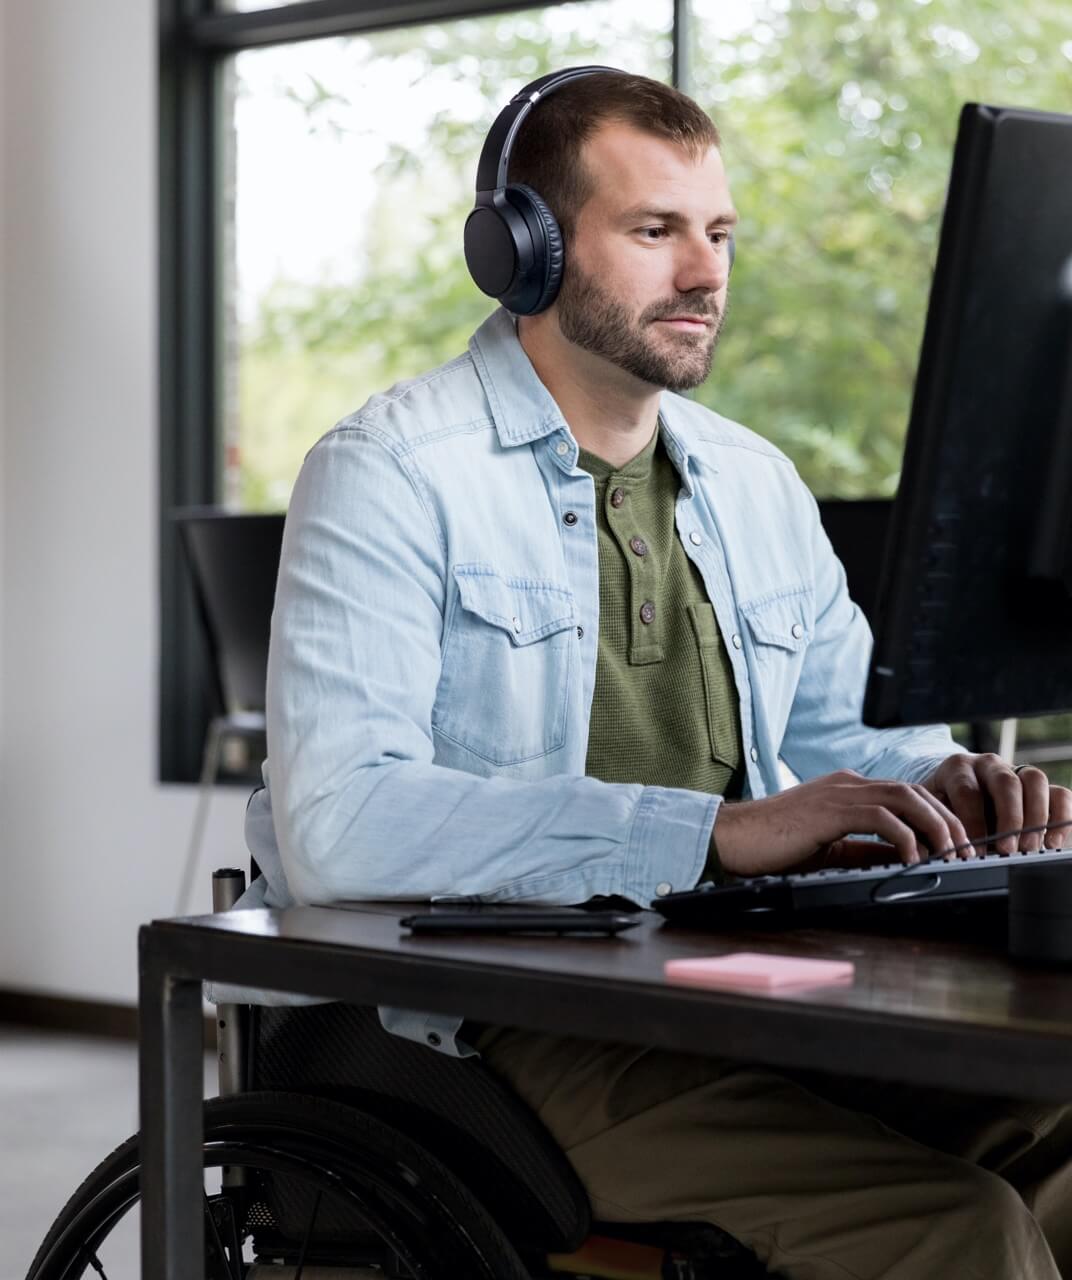 坐在轮椅上的男子坐在电脑前工作。他留着胡须，戴着耳机。他正在键盘上打字，似乎是在办公室工作。